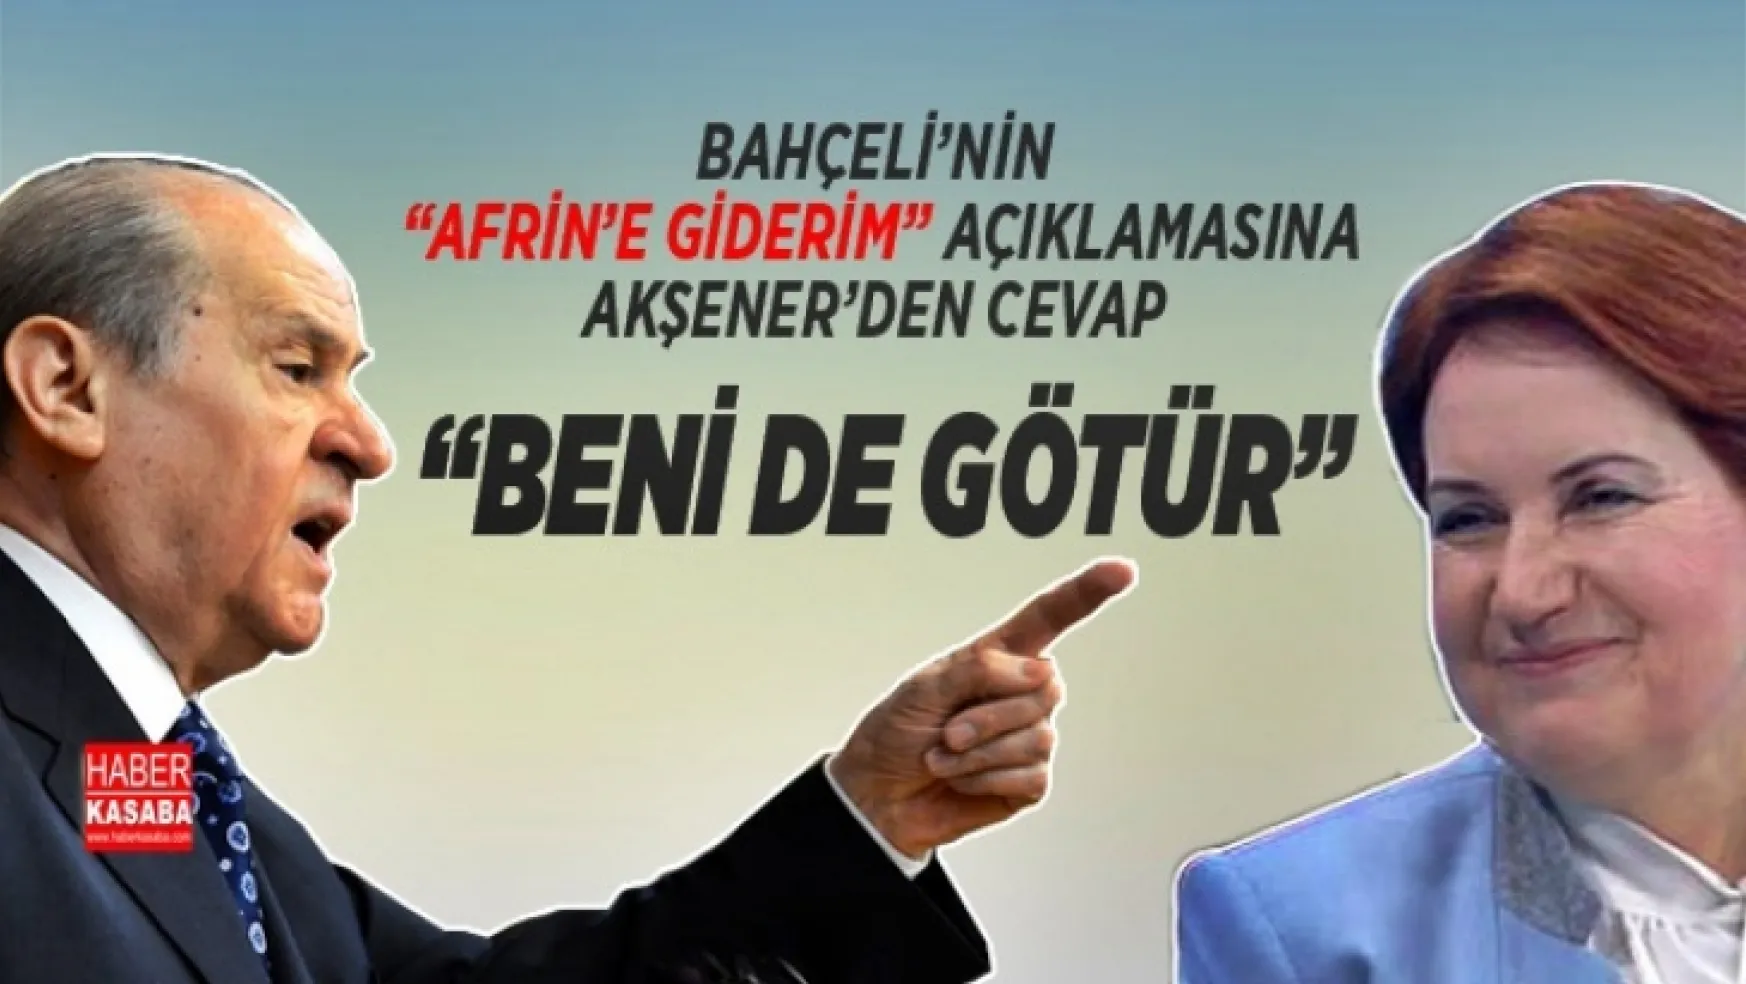 Bahçeli, 'Afrin'e giderim' dedi Akşener'den cevap gecikmedi 'Beni de götür'